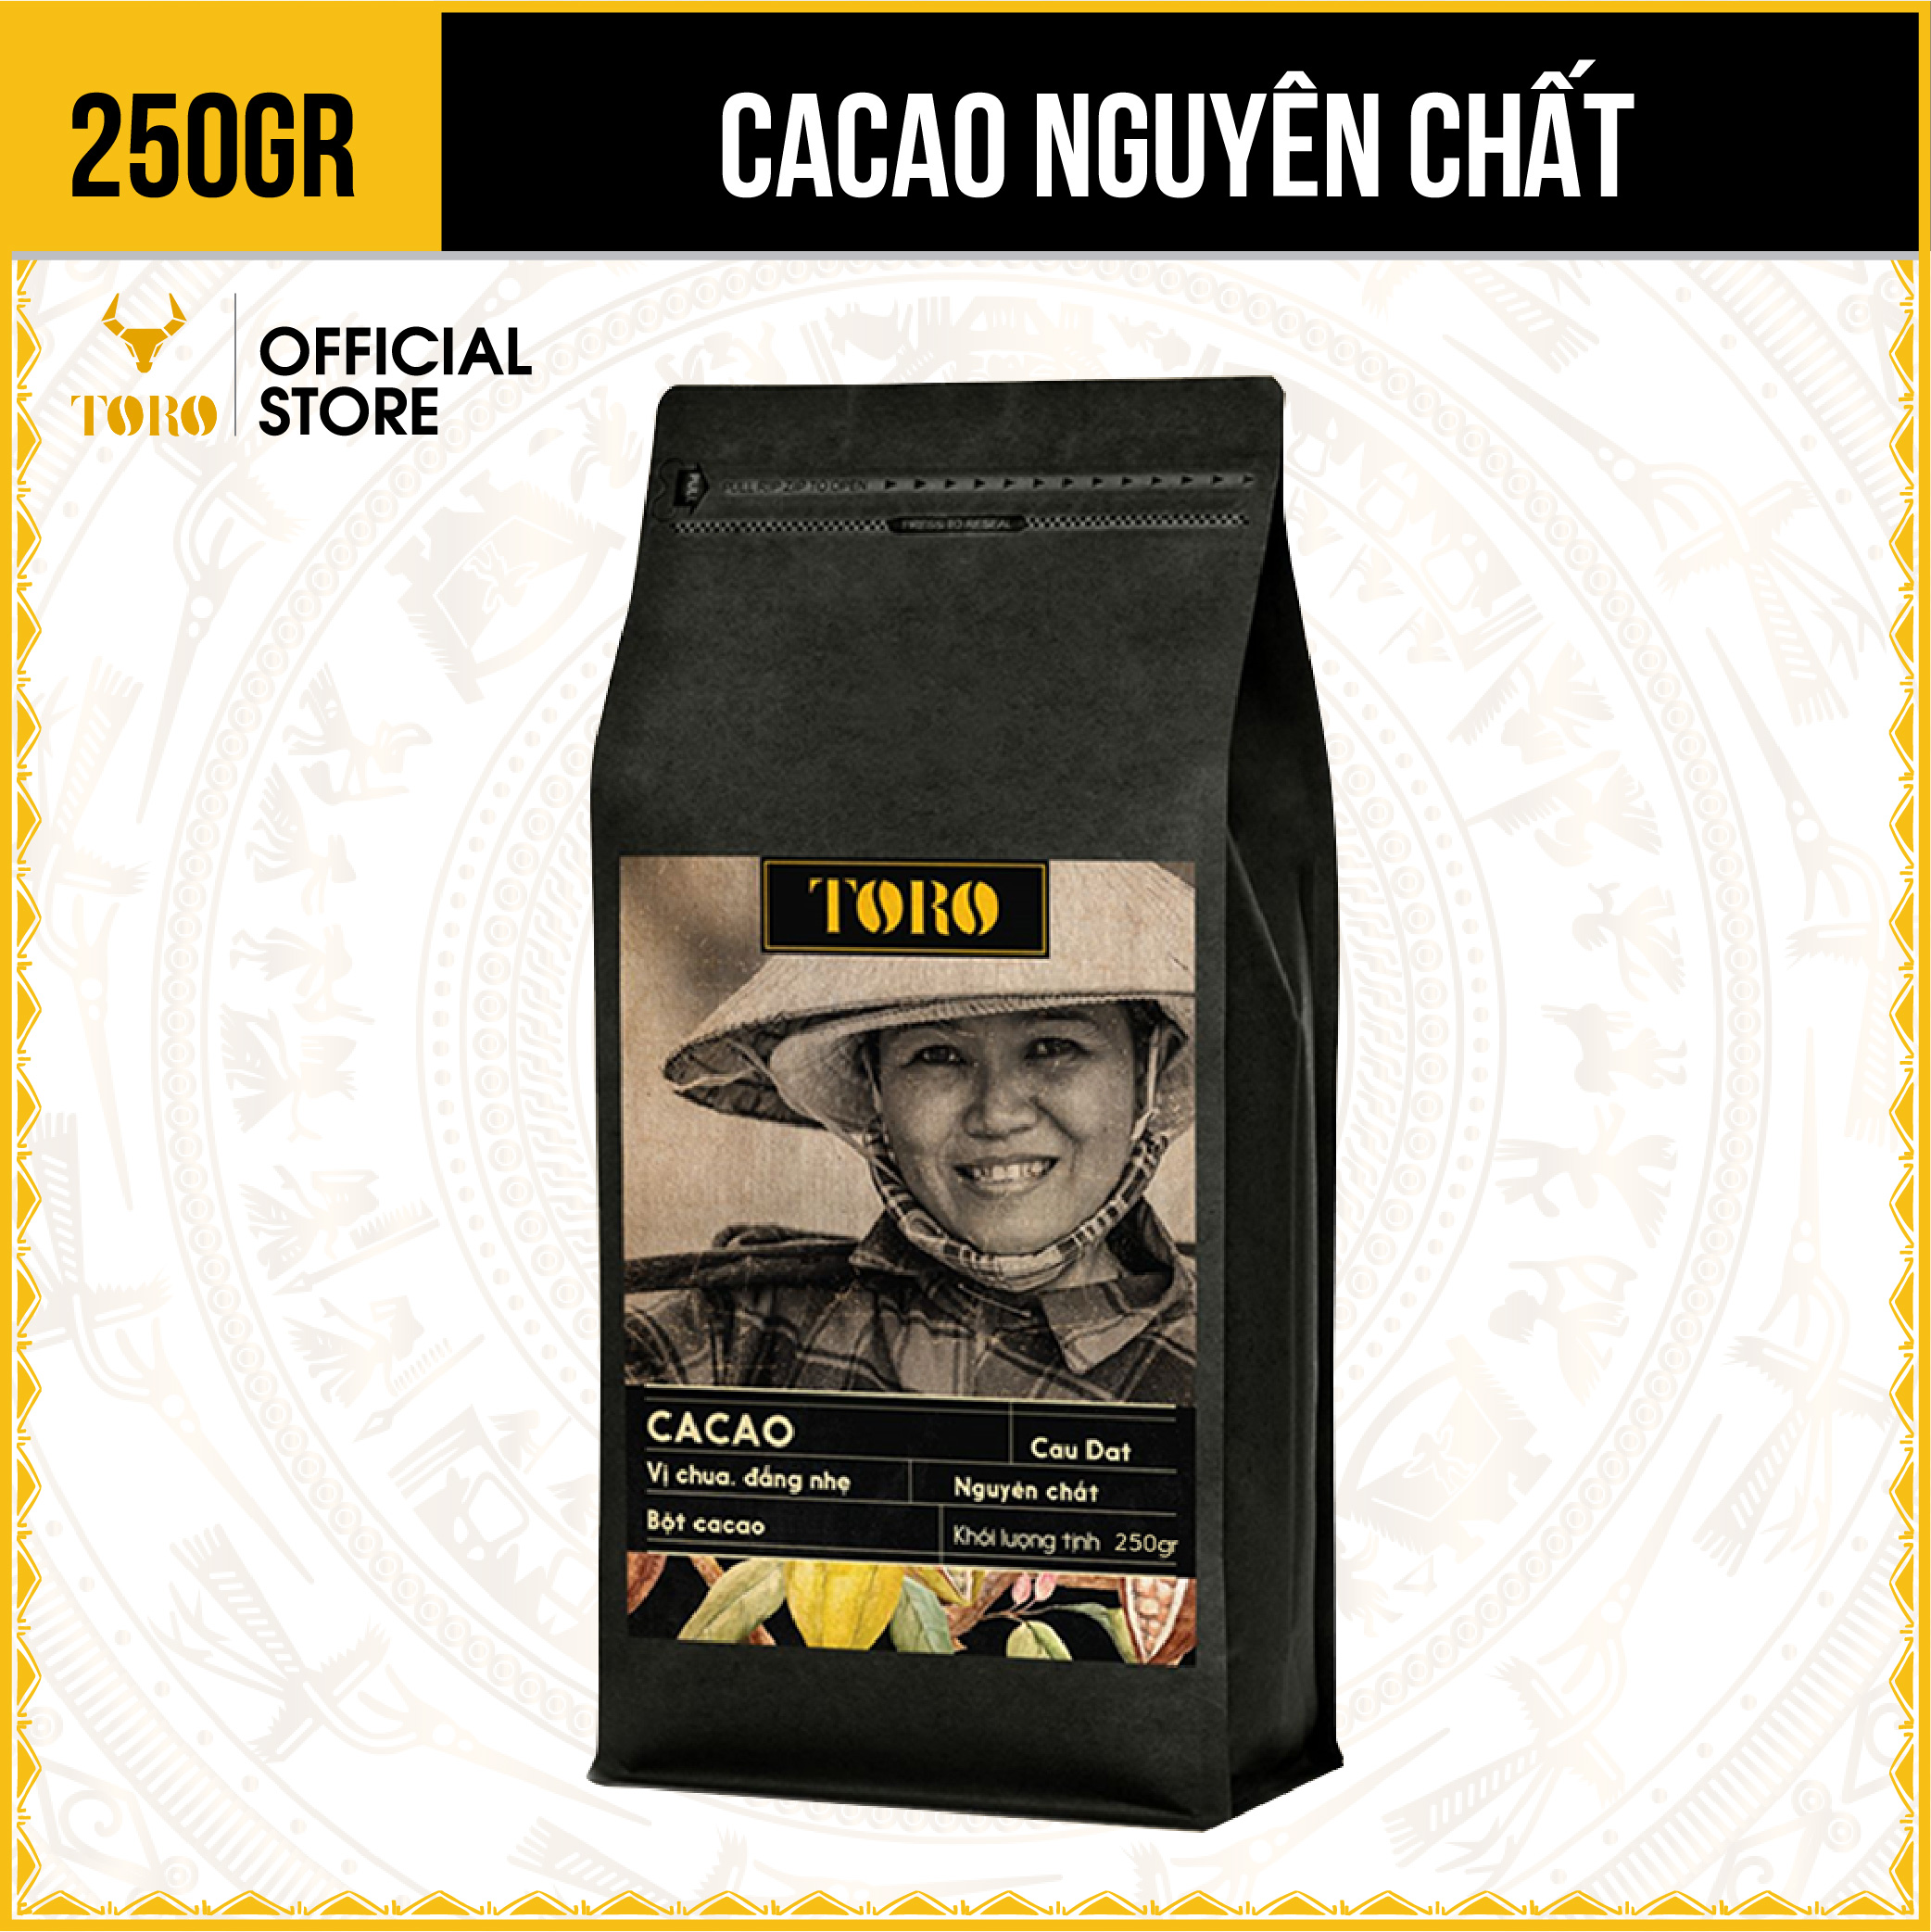 [250GR] Toro Cacao Nguyên Chất 100% | TORO FARM